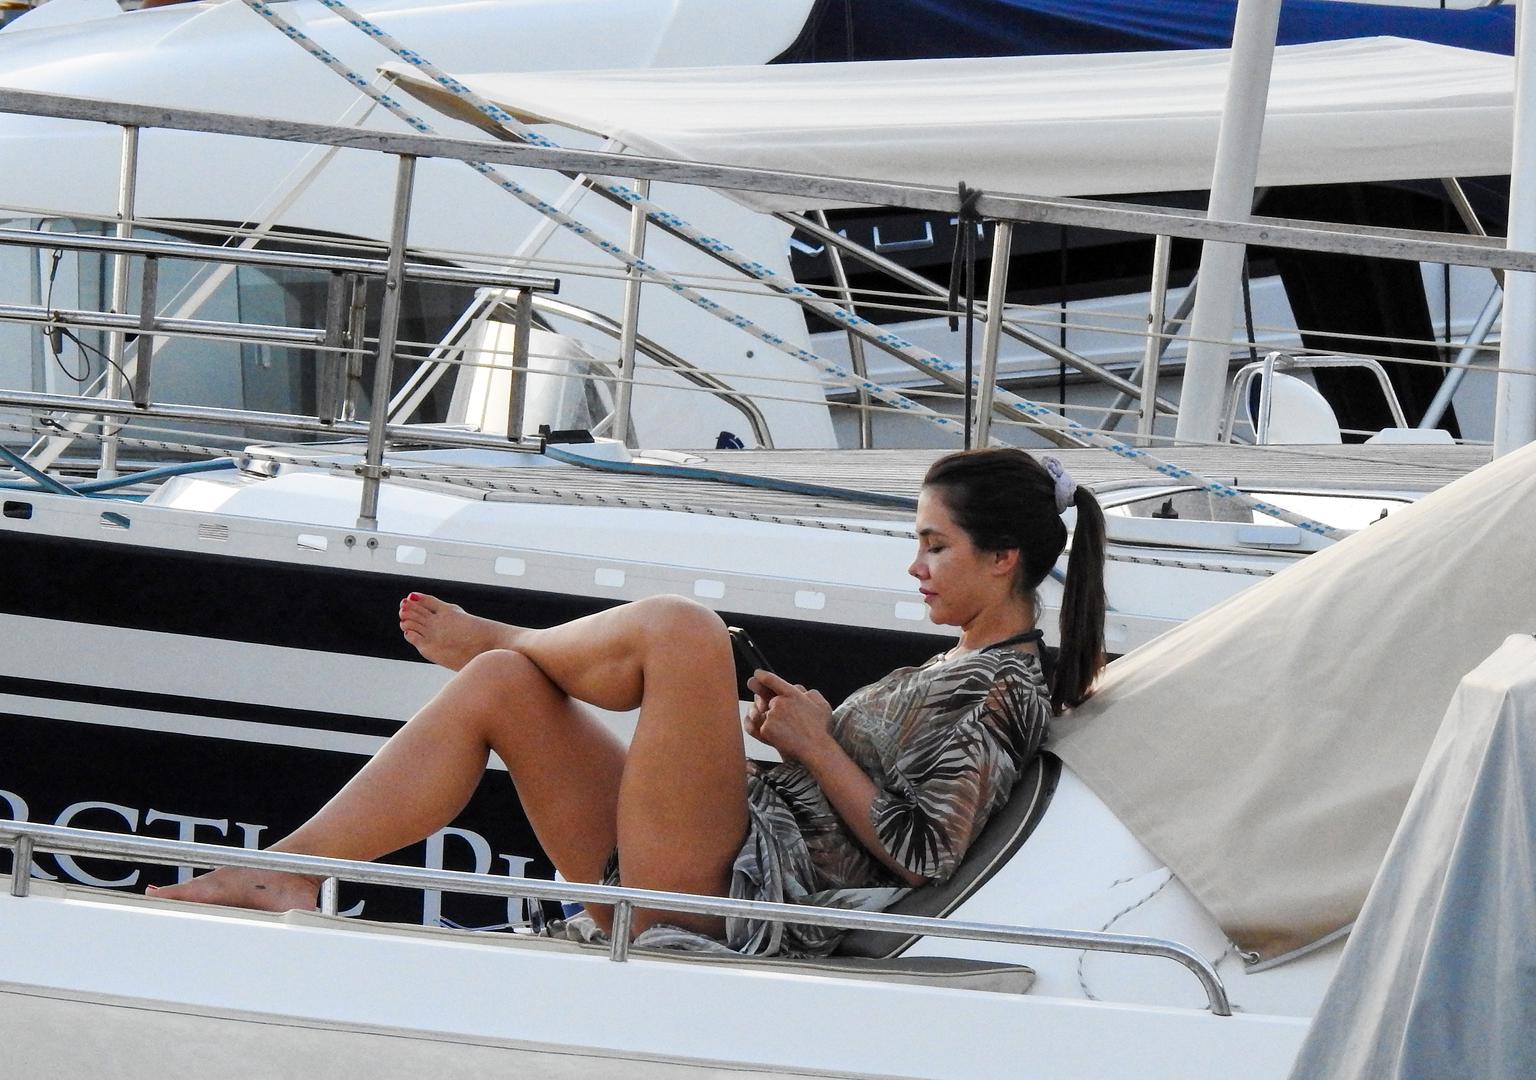 Voditeljica i bivša Miss Universe te njezin suprug poduzetnik nakon kupanja na plaži odmarali su se na svom brodu. 